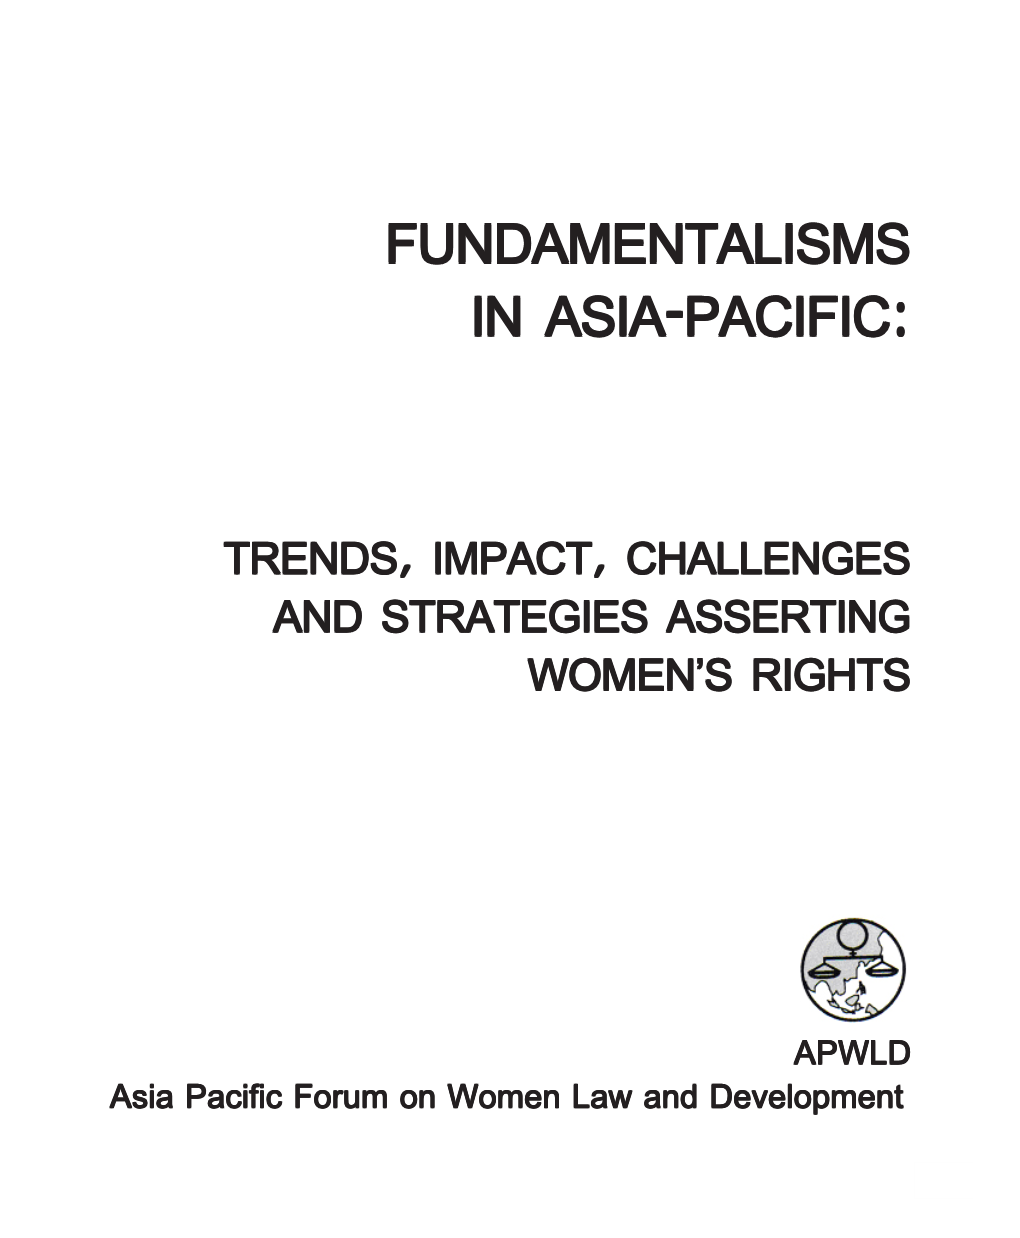 Fundamentalisms in Asia-Pacific